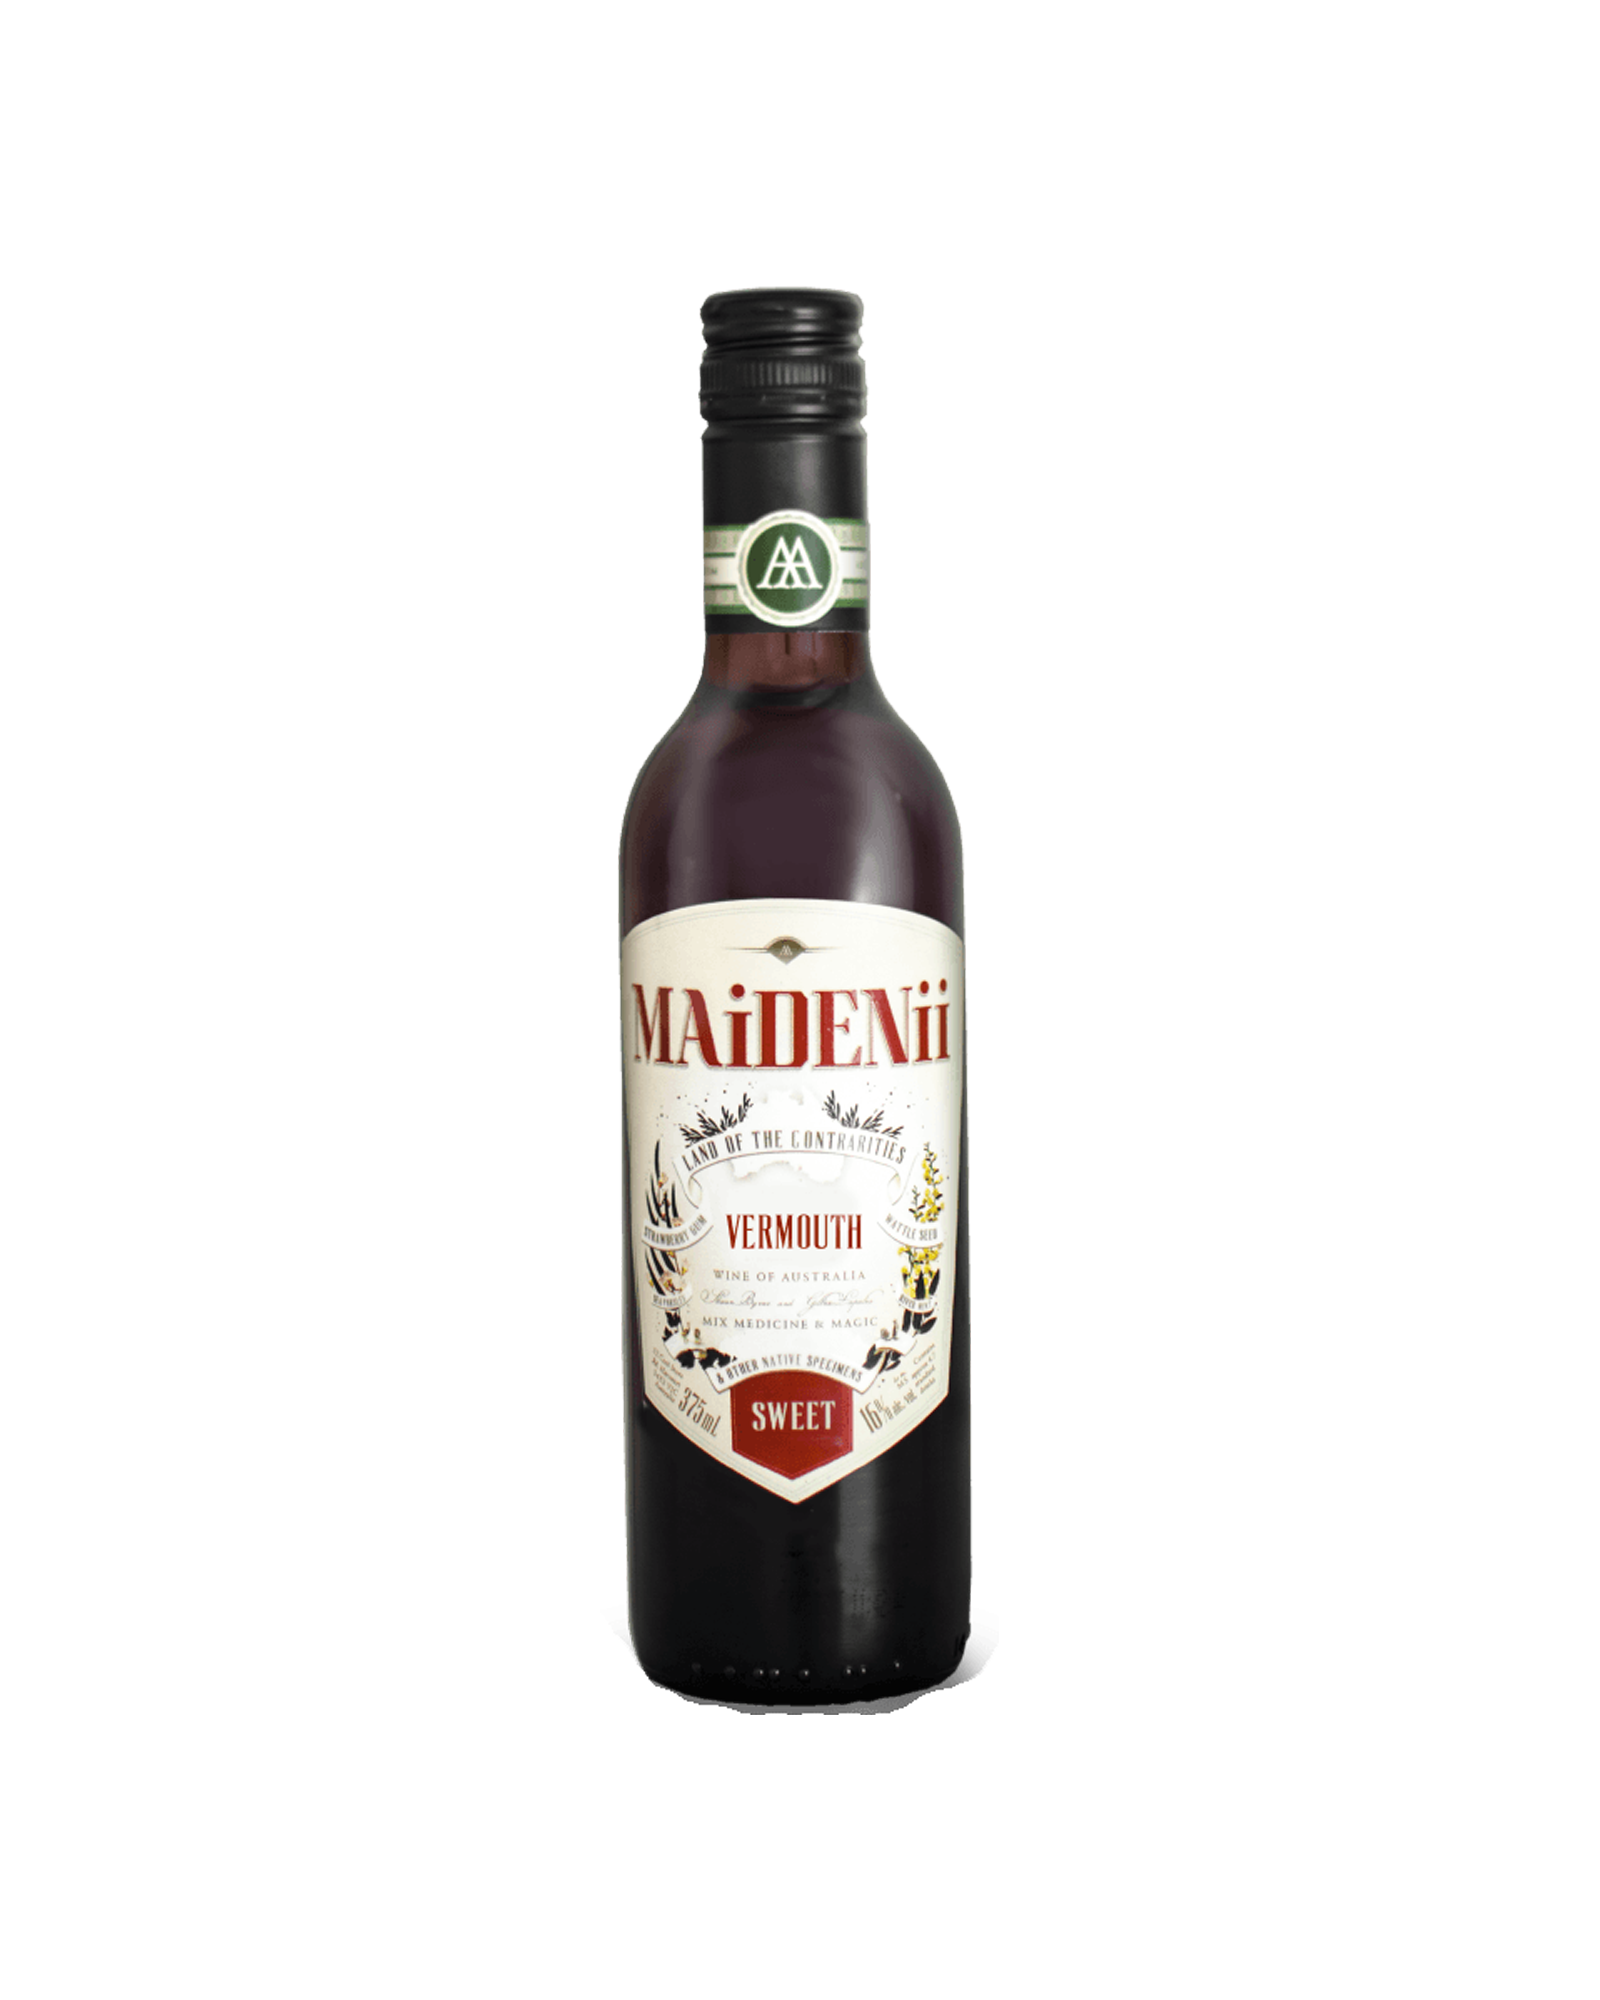 Maidenii Sweet Vermouth 375mL